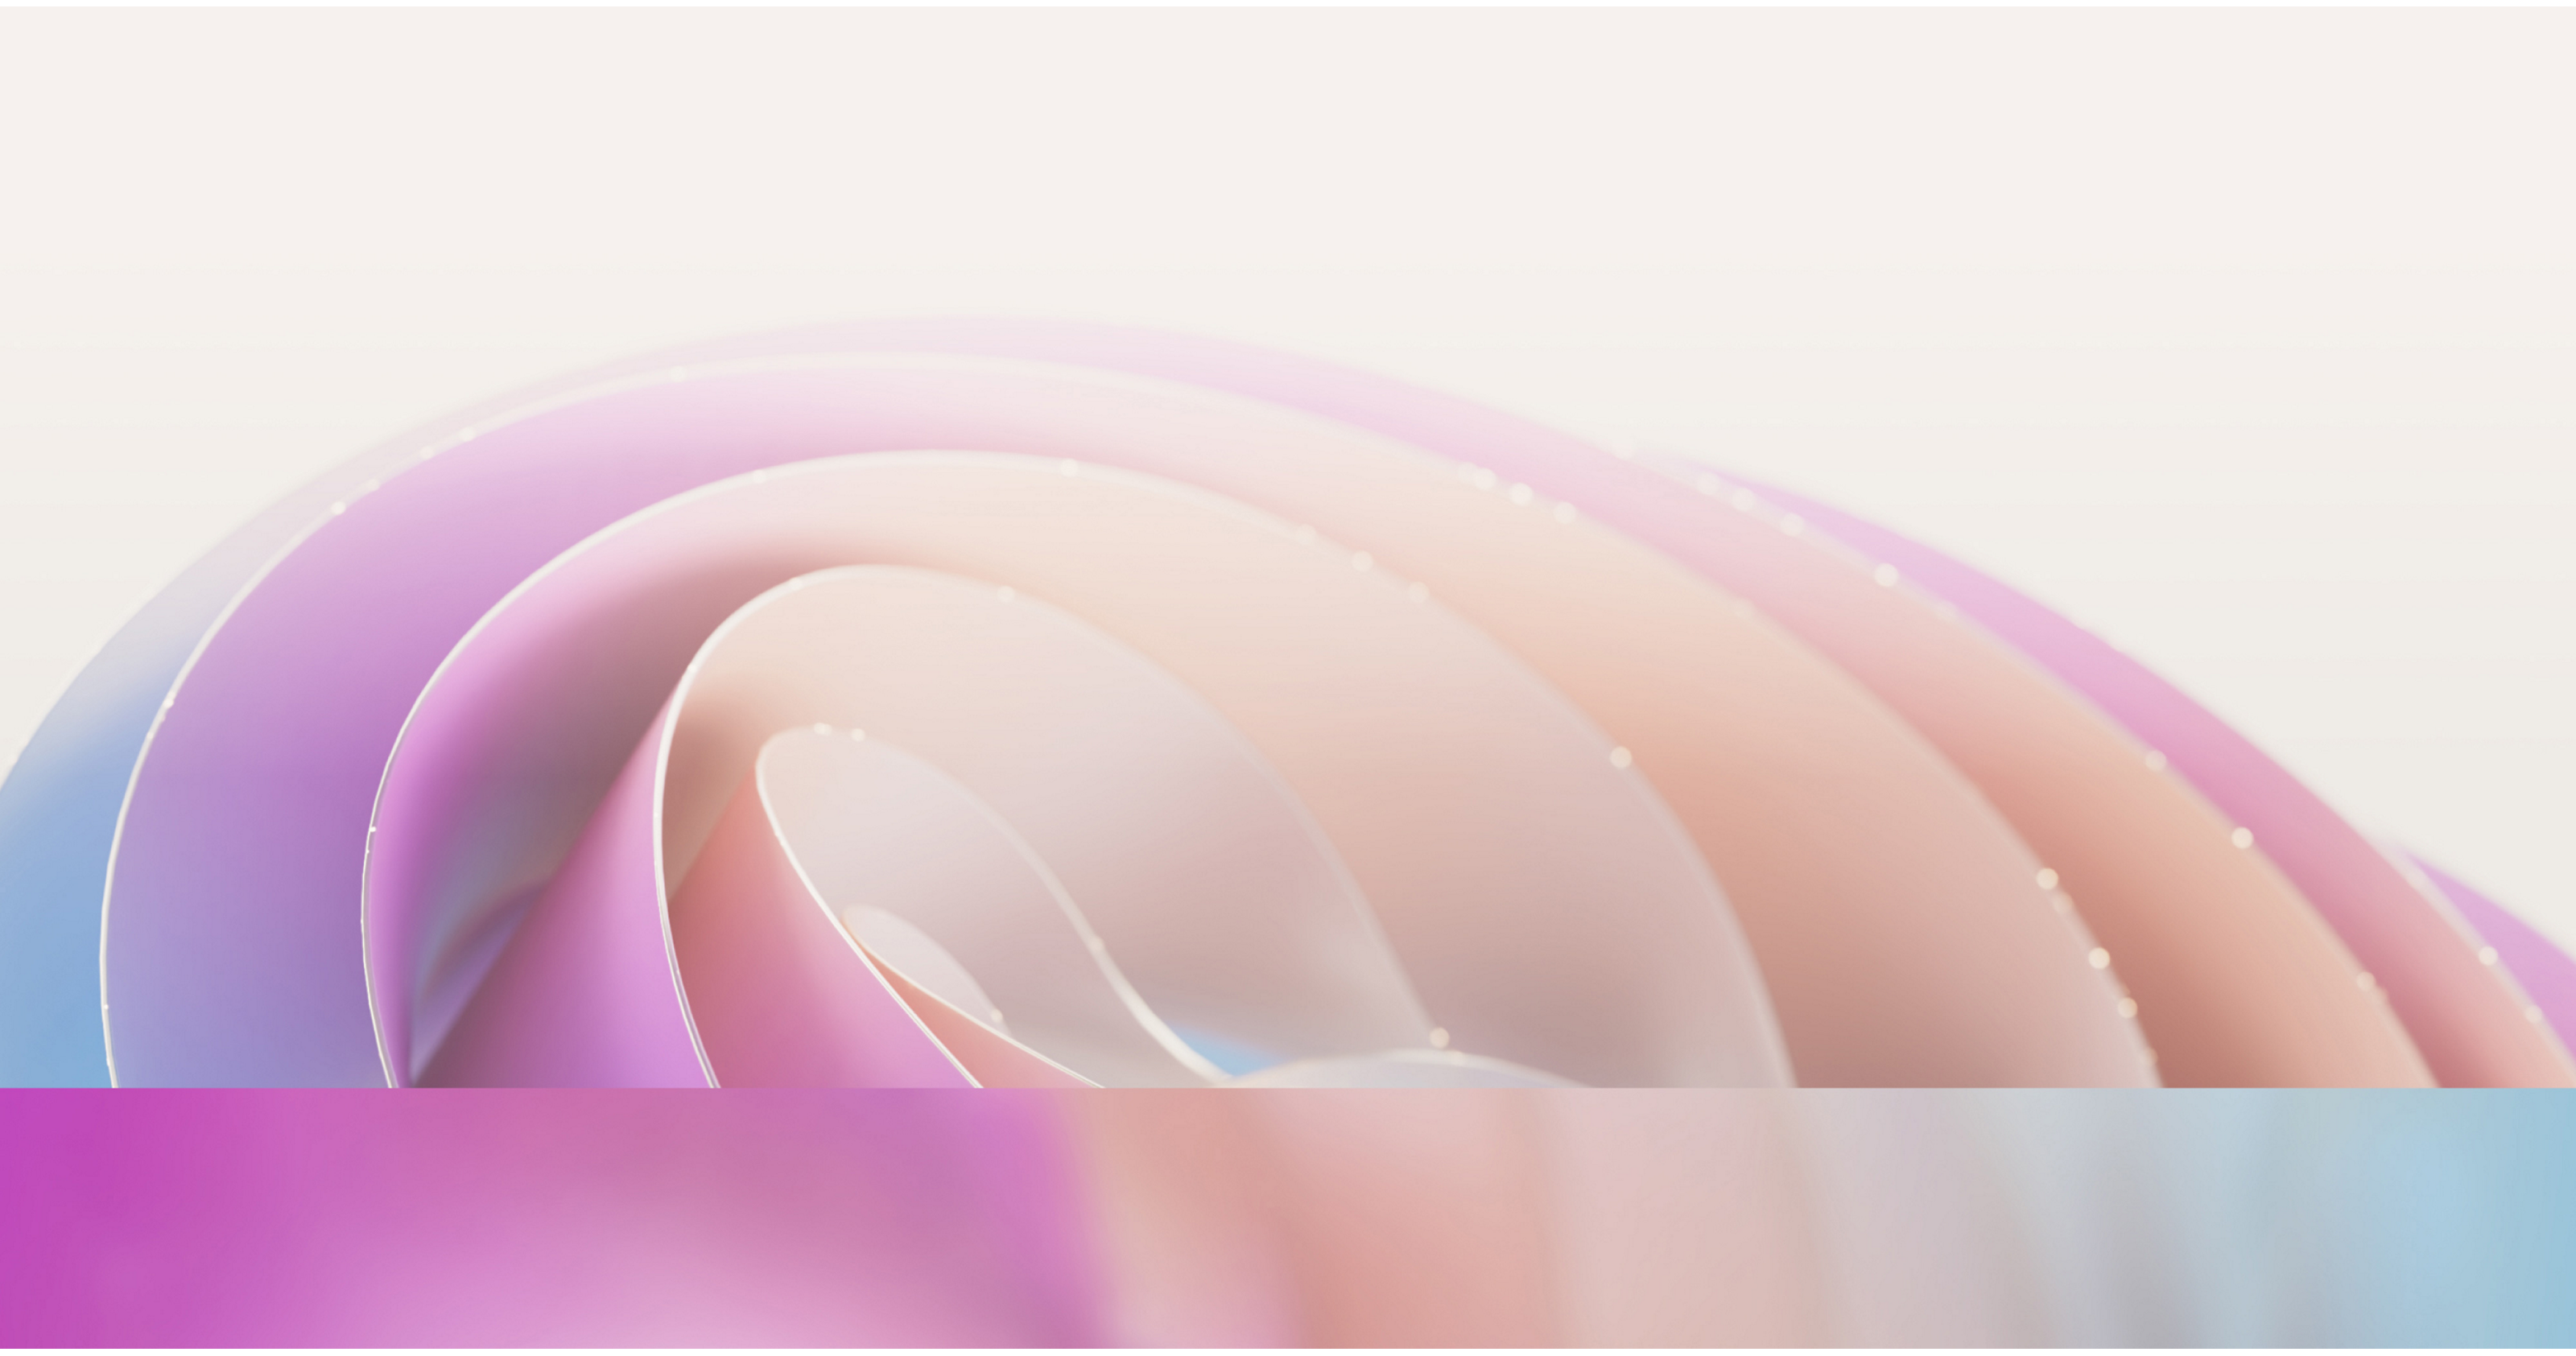 Abstraktes Bild mit weichen, fließenden Kurven in sanften rosa und lila Farbtönen mit einem dezenten, leicht diffusen Effekt.